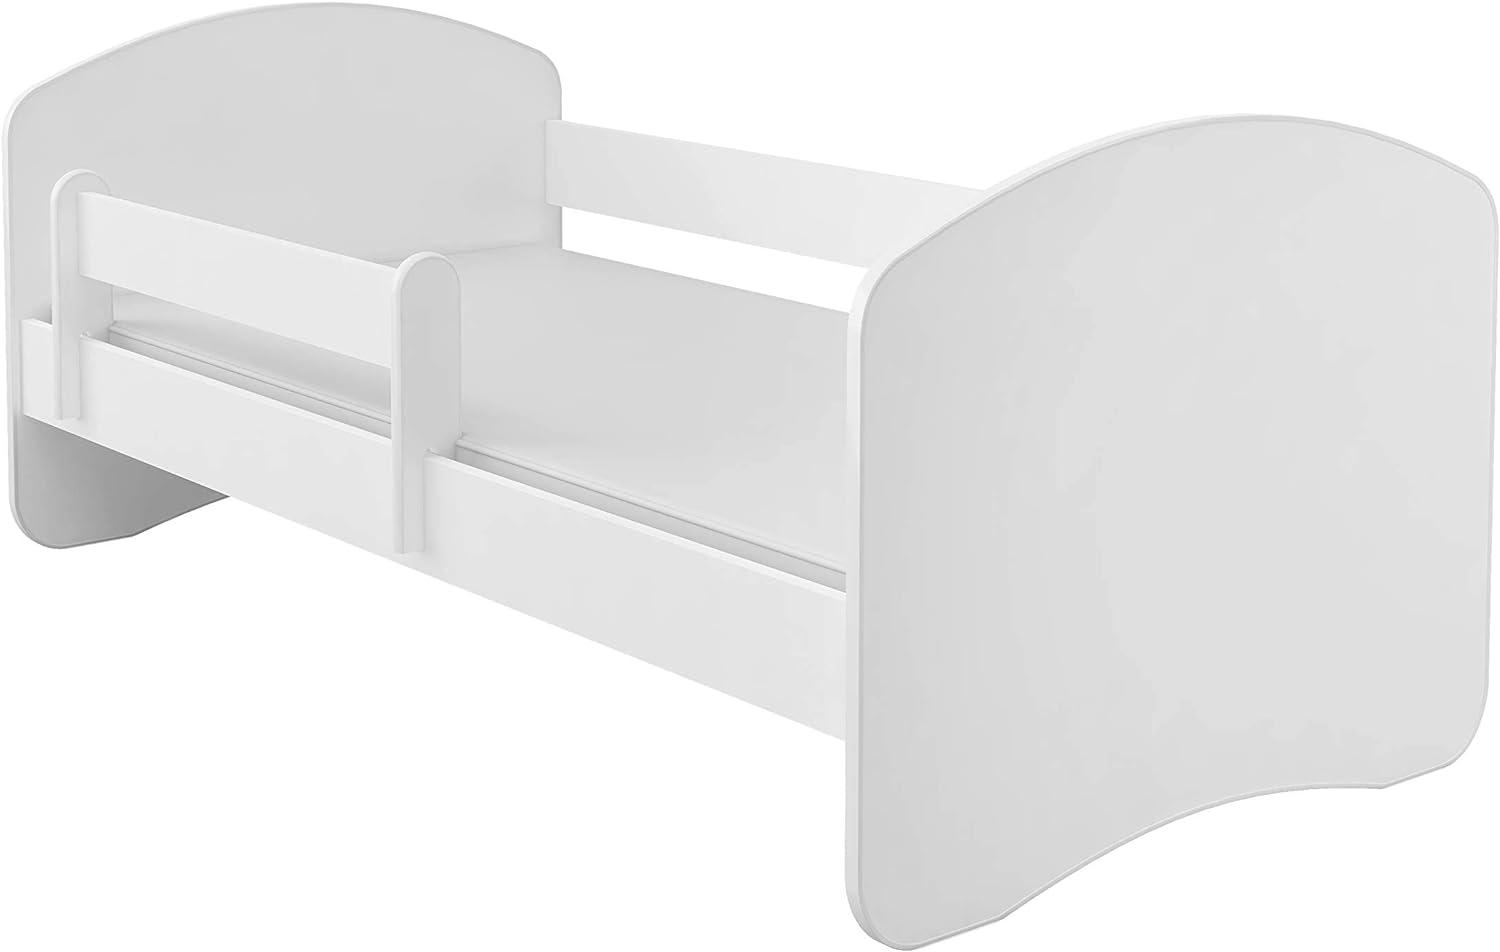 Kinderbett Jugendbett mit einer Schublade und Matratze Weiß ACMA II (180x80 cm, Weiß) Bild 1